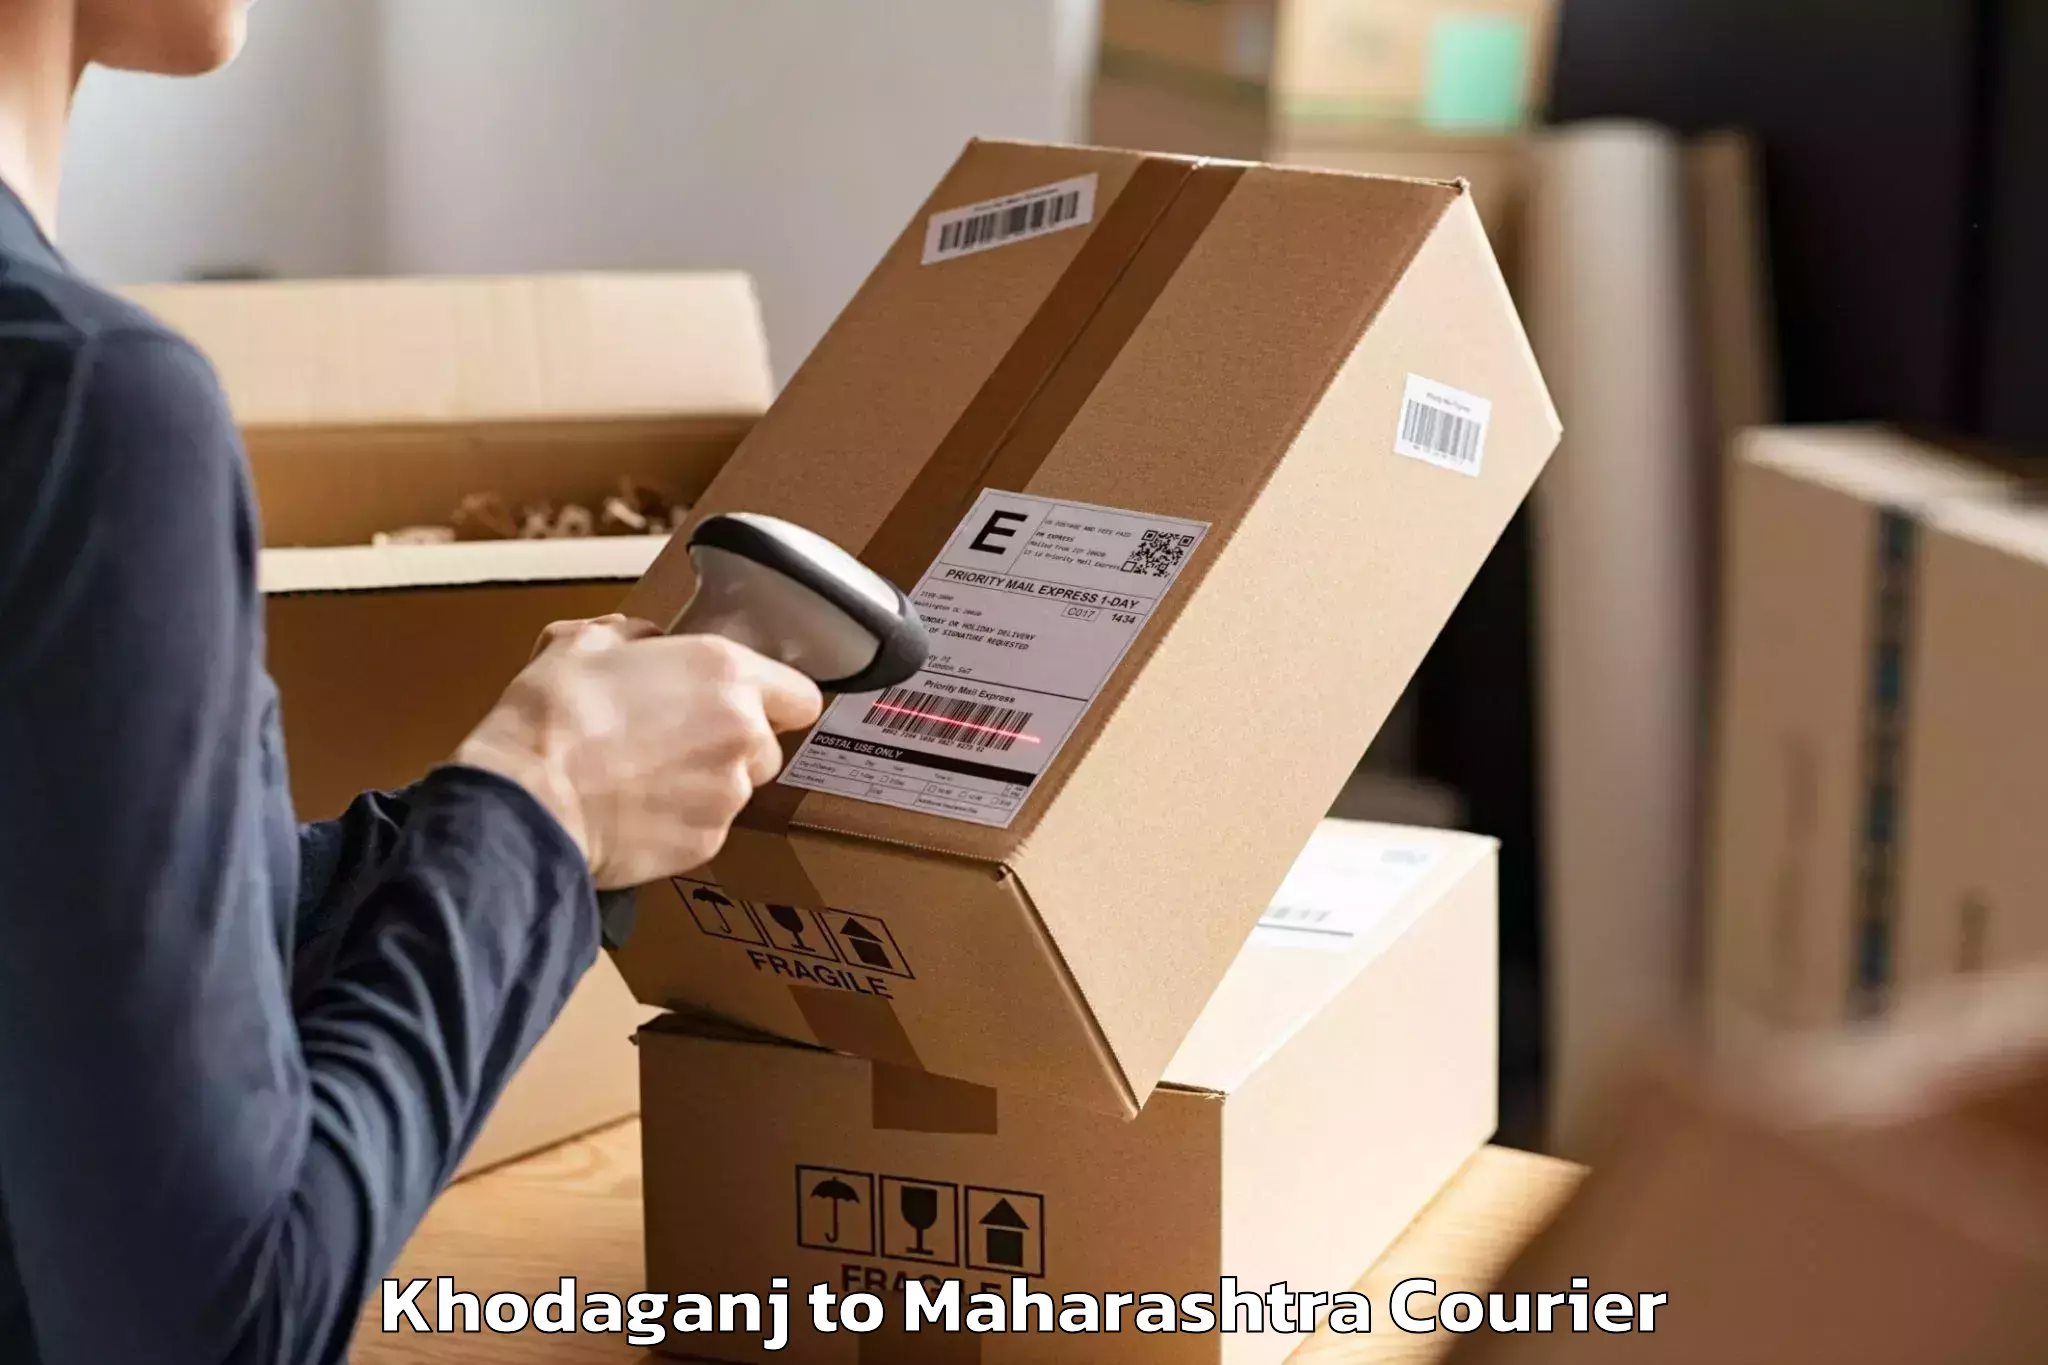 Moving and packing experts Khodaganj to Maharashtra